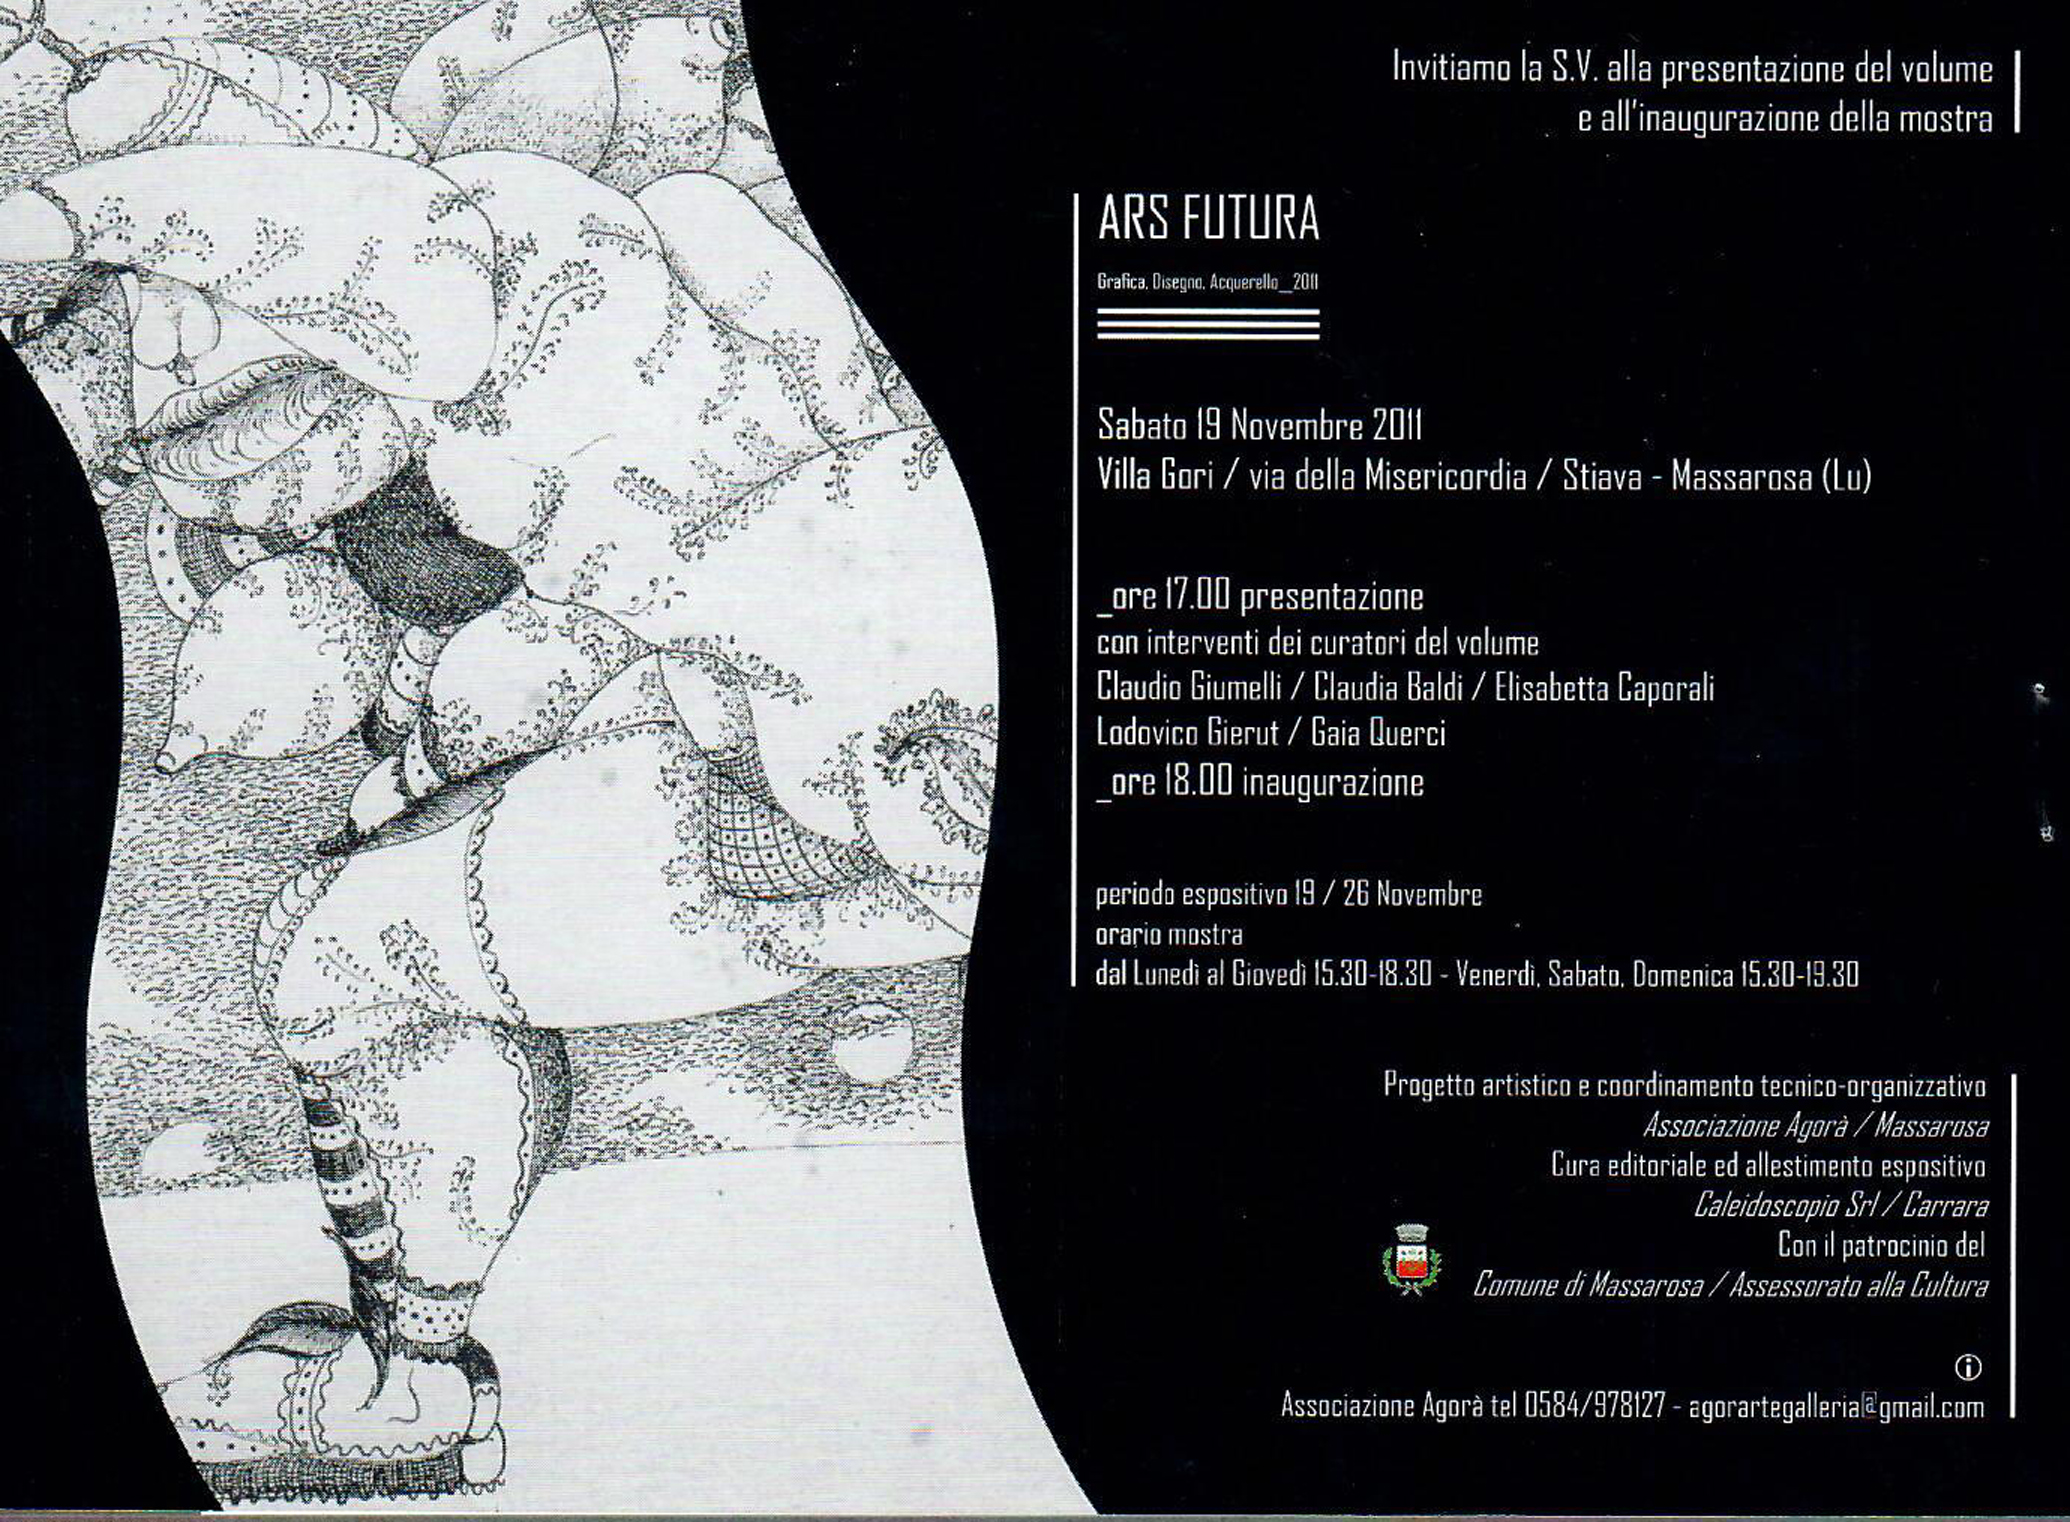 2011 - 'Ars Futura-Grafica, Disegno, Acquarello 2011', Gladys Sica, Catalogo Caleidoscopio Srl, Carrara